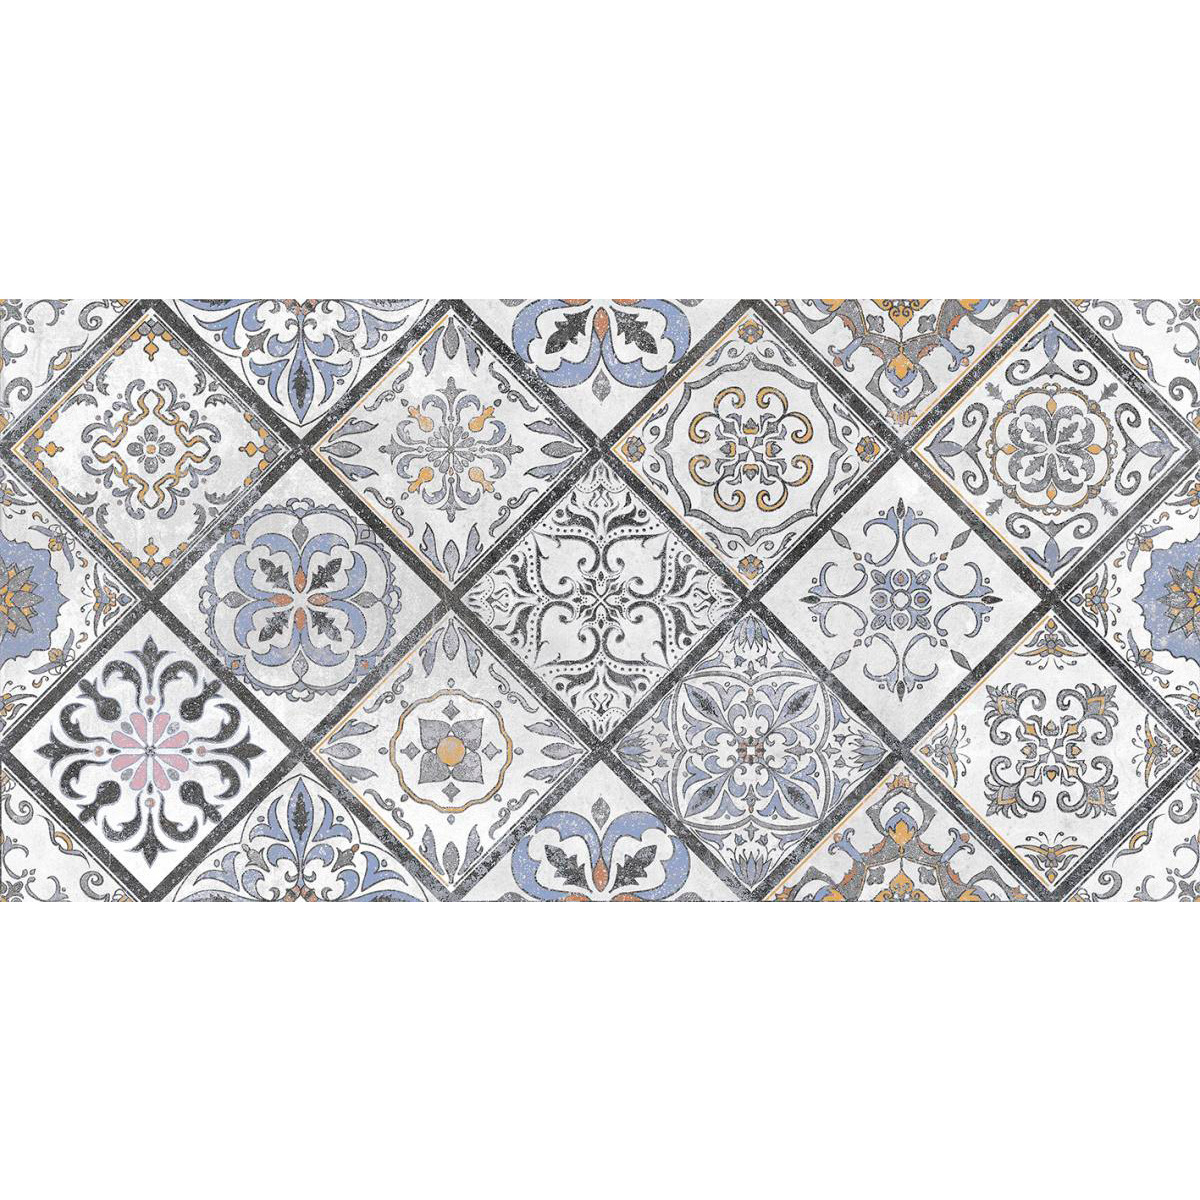 Плитка керамическая Laparet Etnis настенная мозаика серая 18-00-06-3654 30х60 см